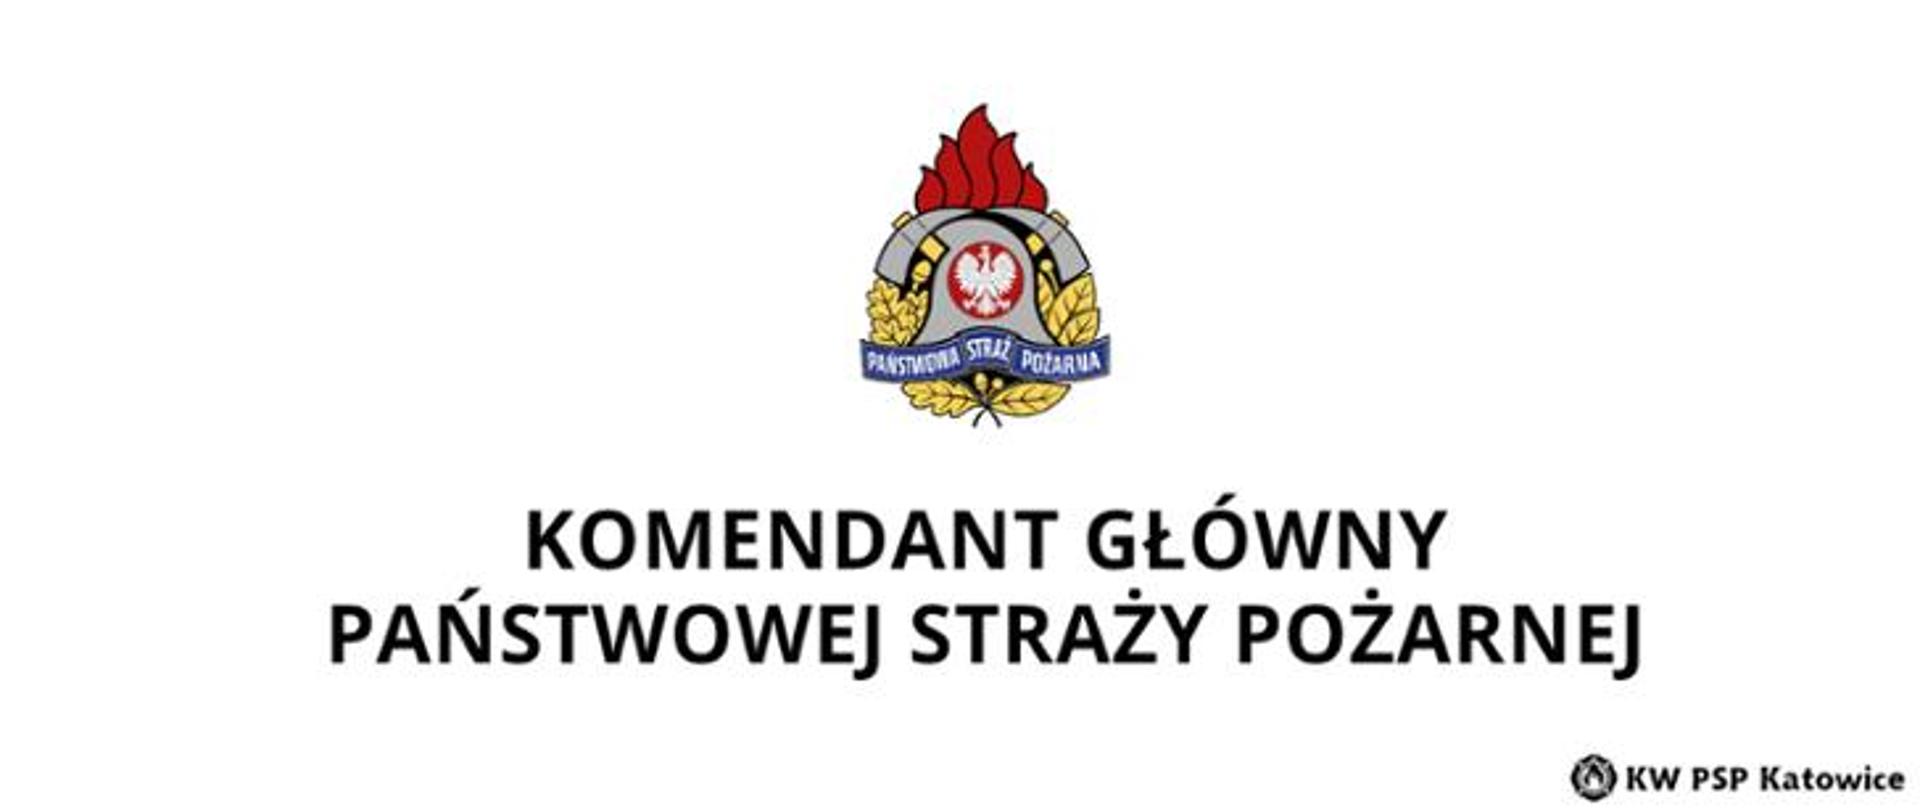 Zdjęcie przedstawia logo Państwowej Straży Pożarnej wraz z tekstem Komendant Główny Państwowej Straży Pożarnej